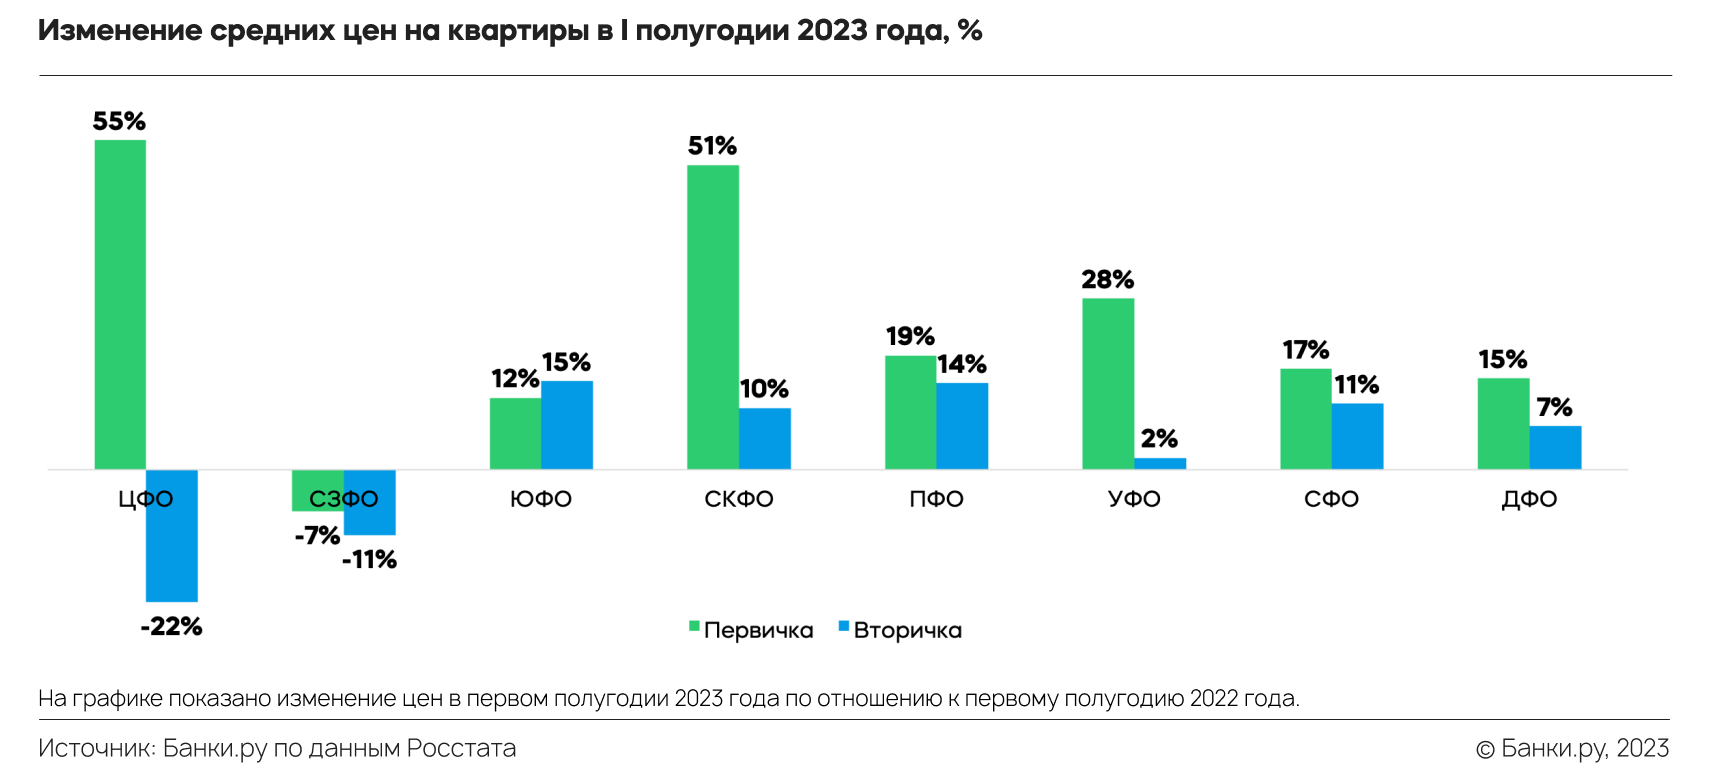 Приватизации квартиры в 2023 году. Сколько стоит средний чек квартиры в Москва Сити.